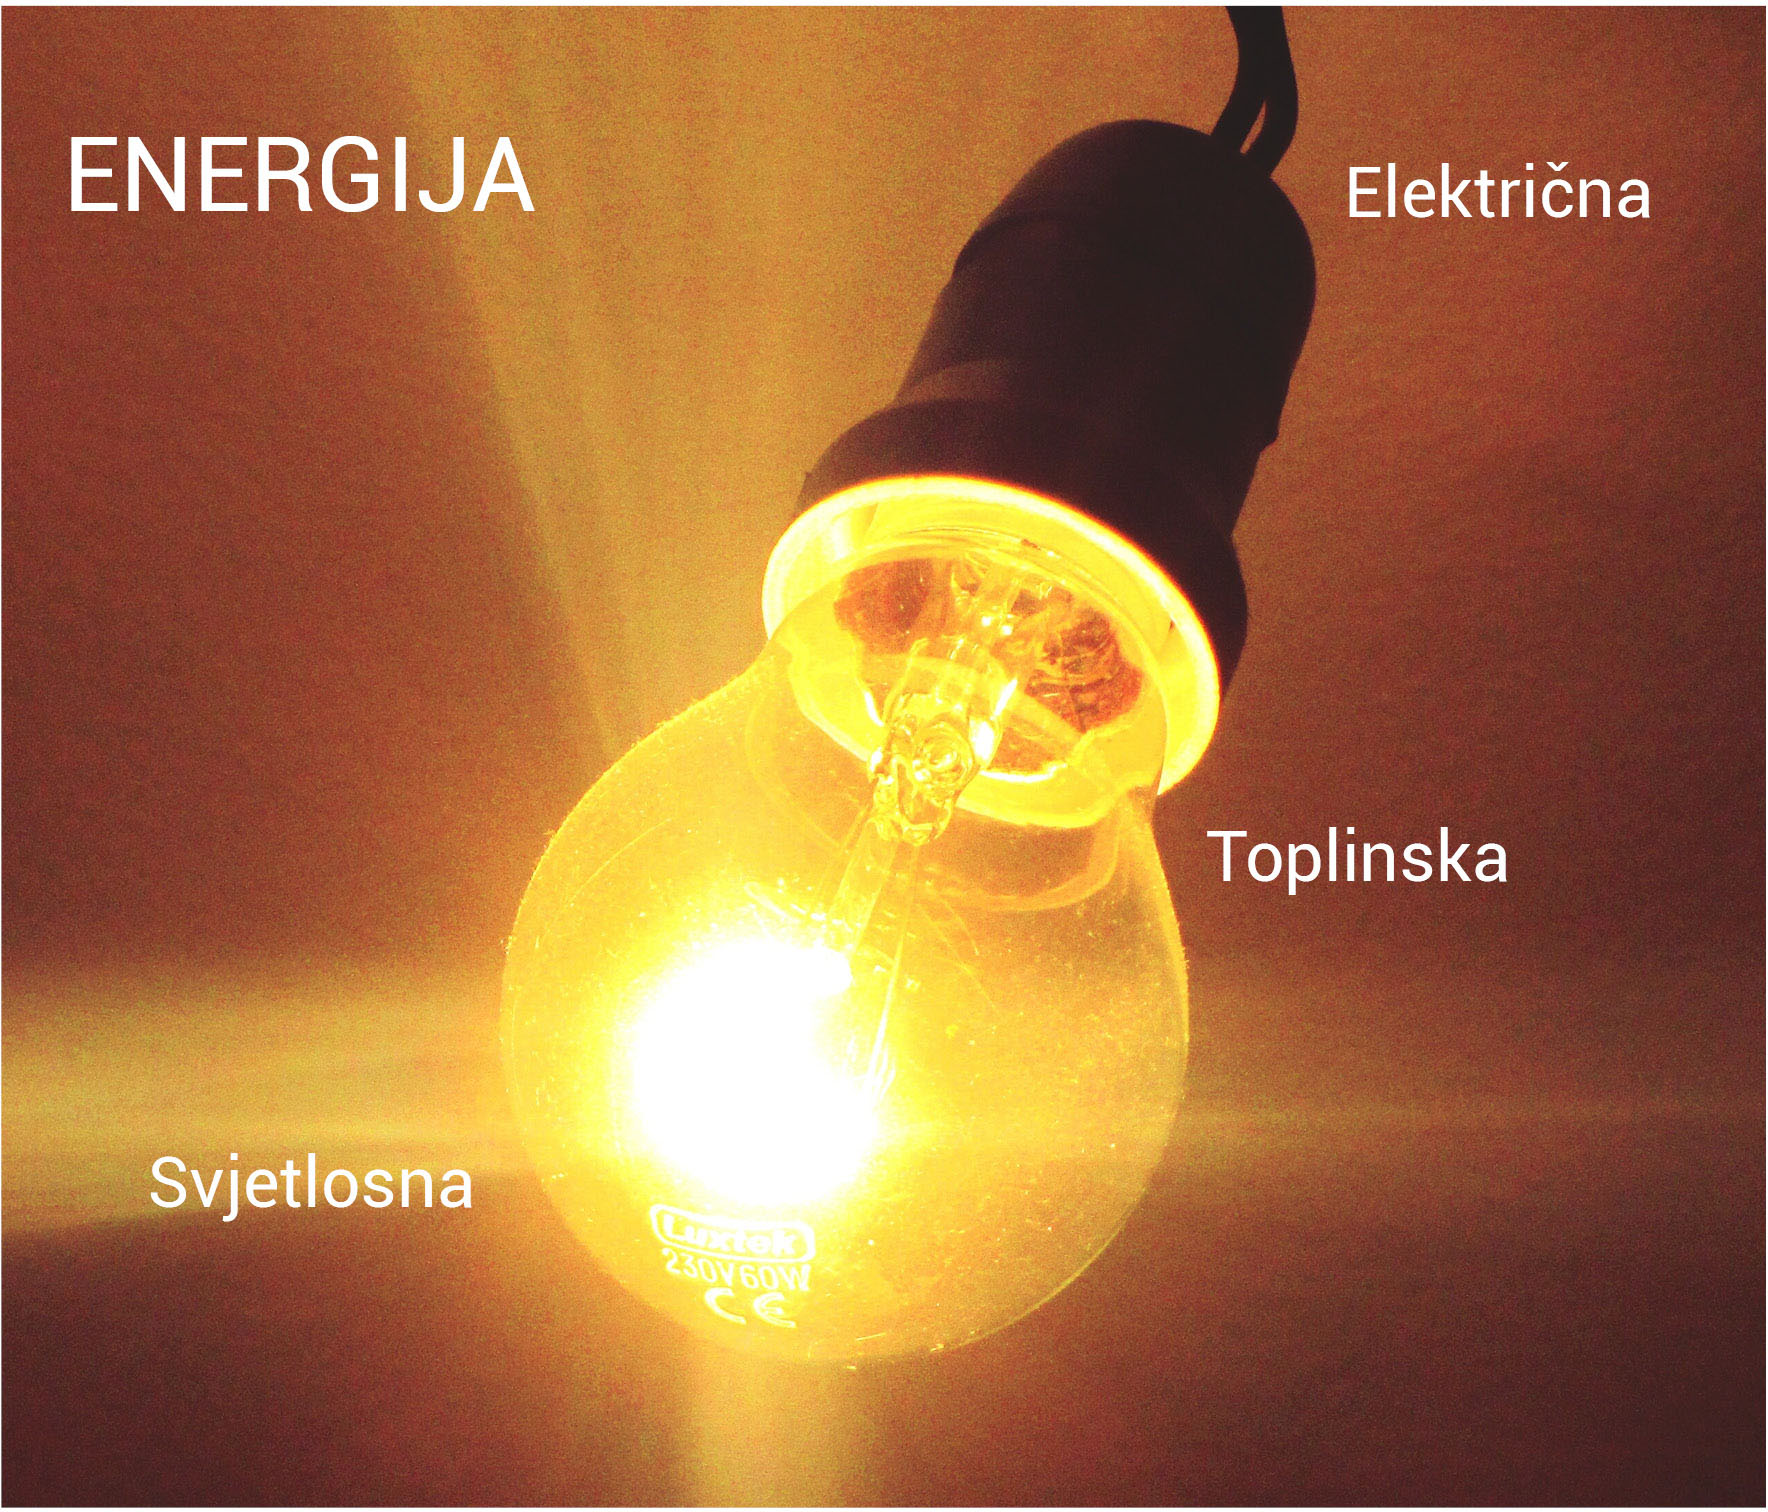 Fotografija prikazuje električnu žarulju kako svijetli. Oko žarulje su na zlatno smeđoj podlozi napisane riječi: ENERGIJA, električna, toplinska, svjetlosna.